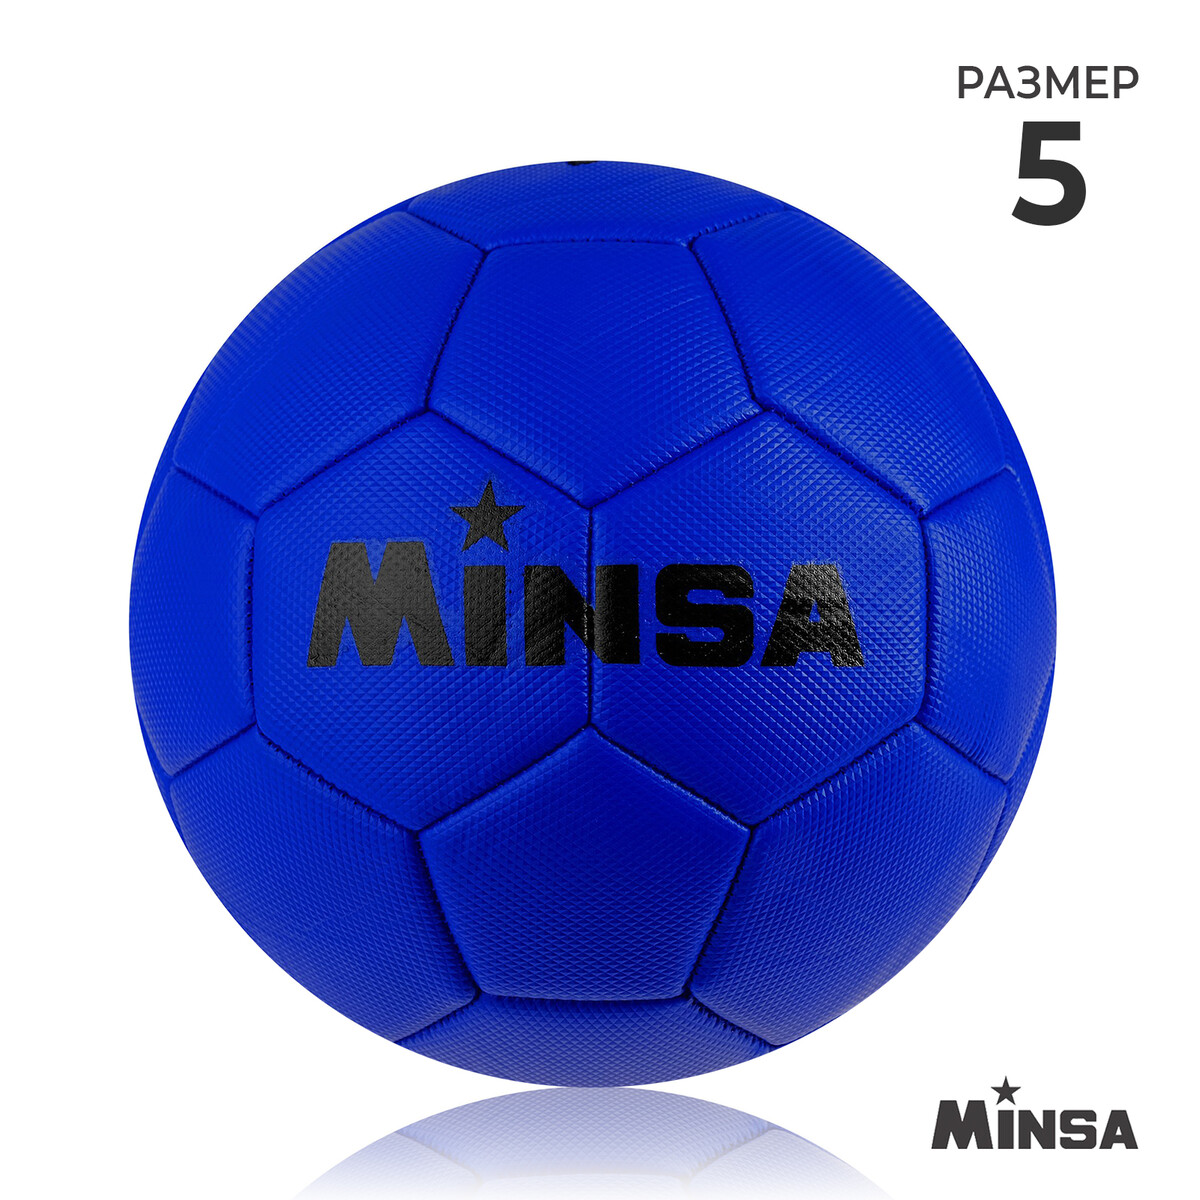 Мяч футбольный minsa, пвх, машинная сшивка, 32 панели, р. 5 мяч футбольный minsa classic pvc машинная сшивка 32 панели р 5